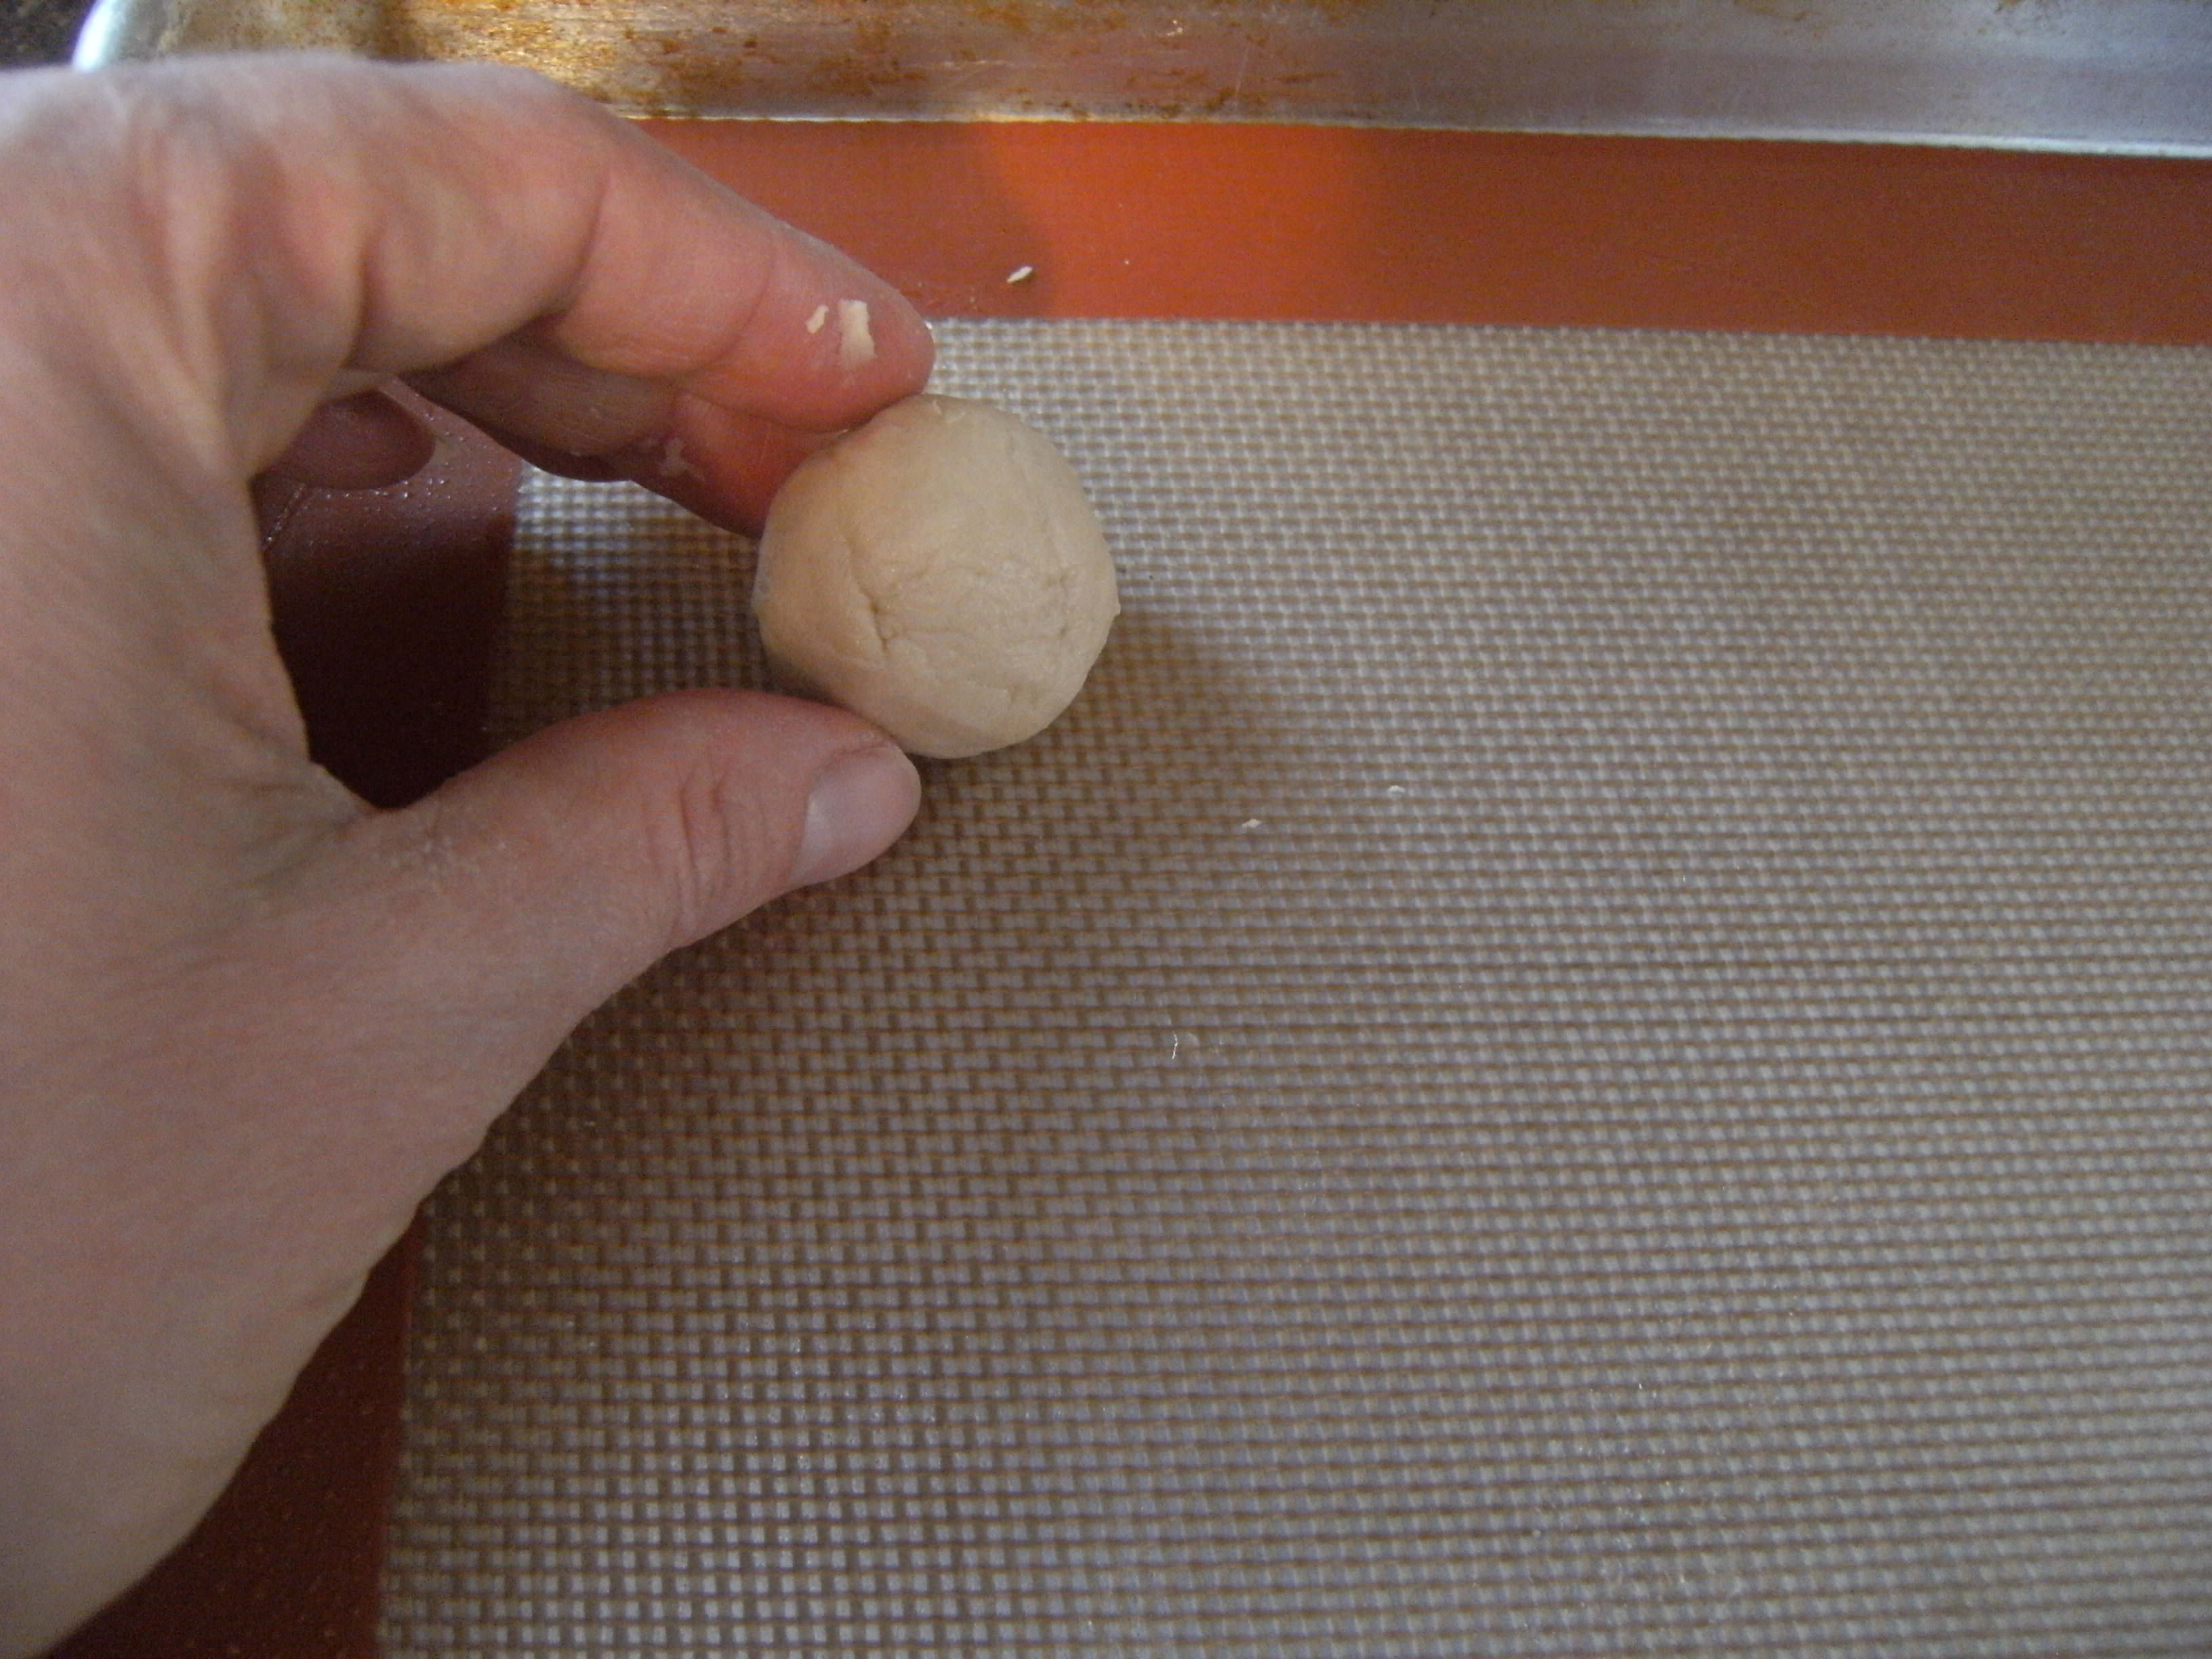 A ball of pfeffernusse cookie dough